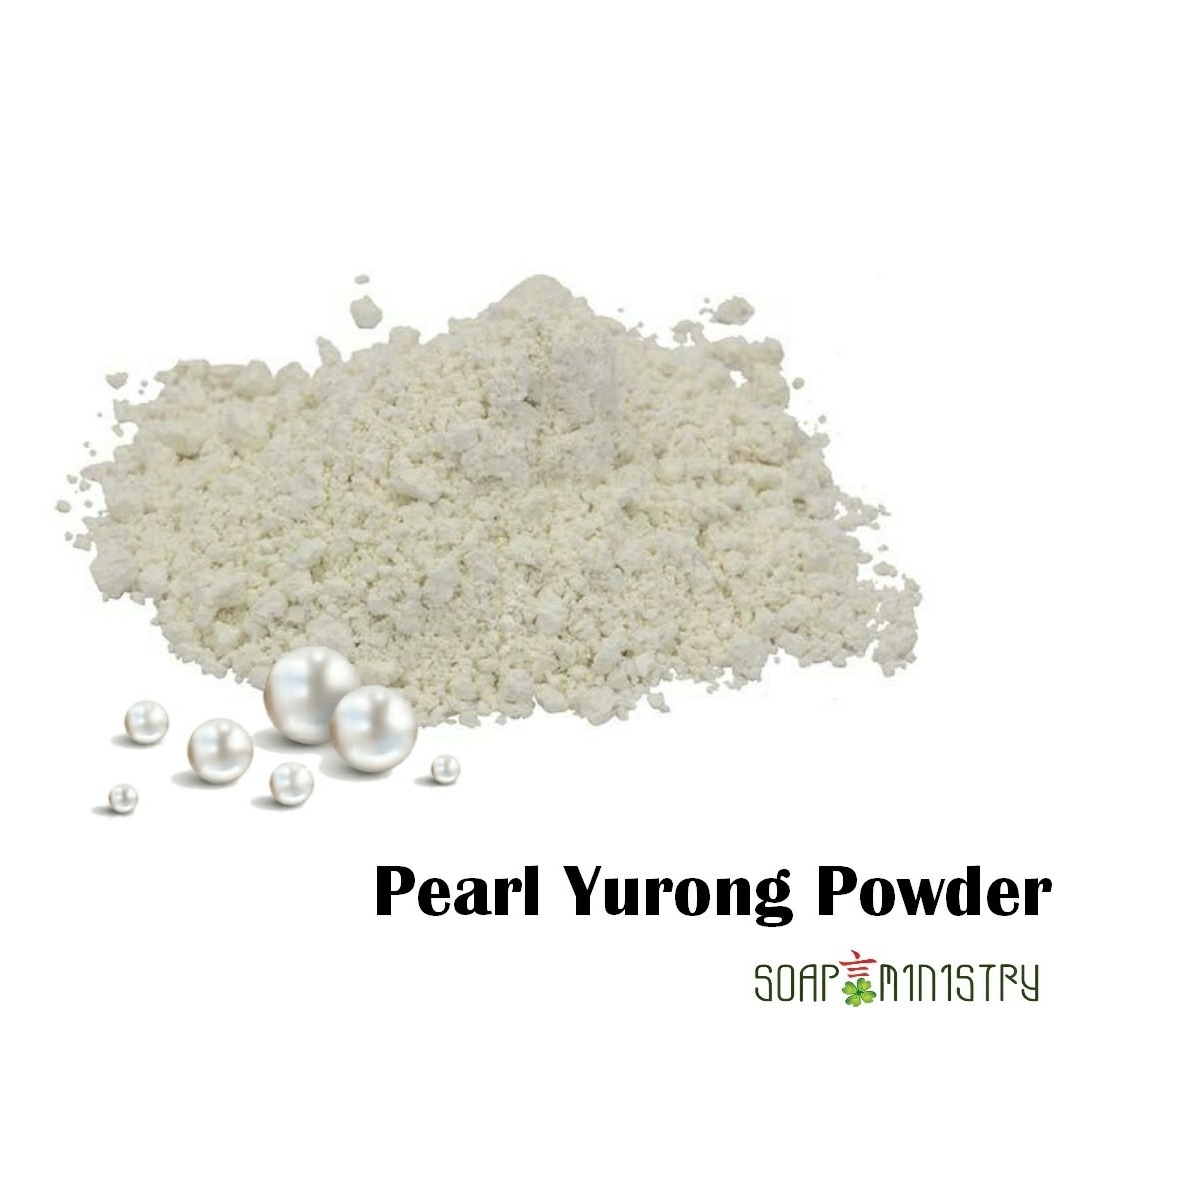 Pearl Yurong Powder 250g